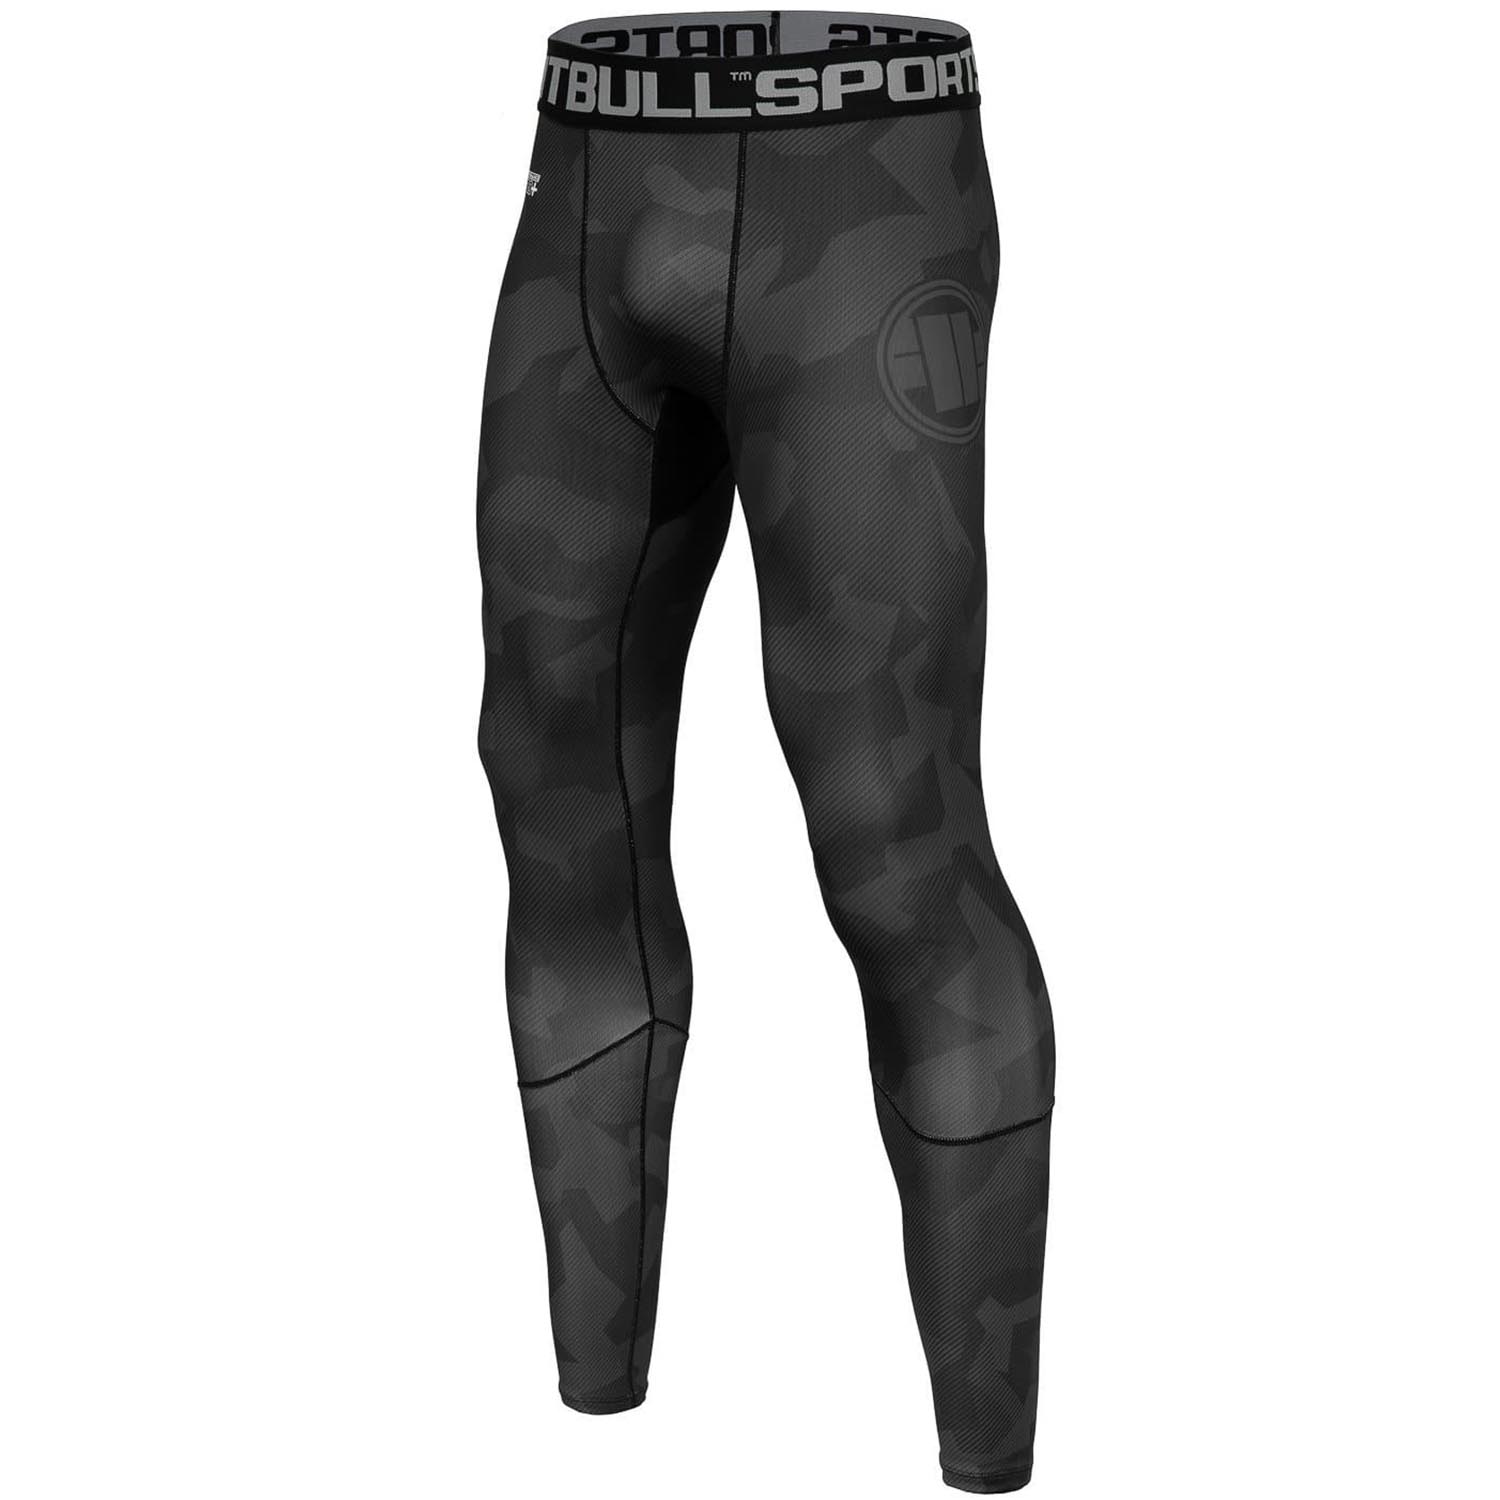 Pit Bull West Coast Compression Pants, Dillard, camo-schwarz, XXXL